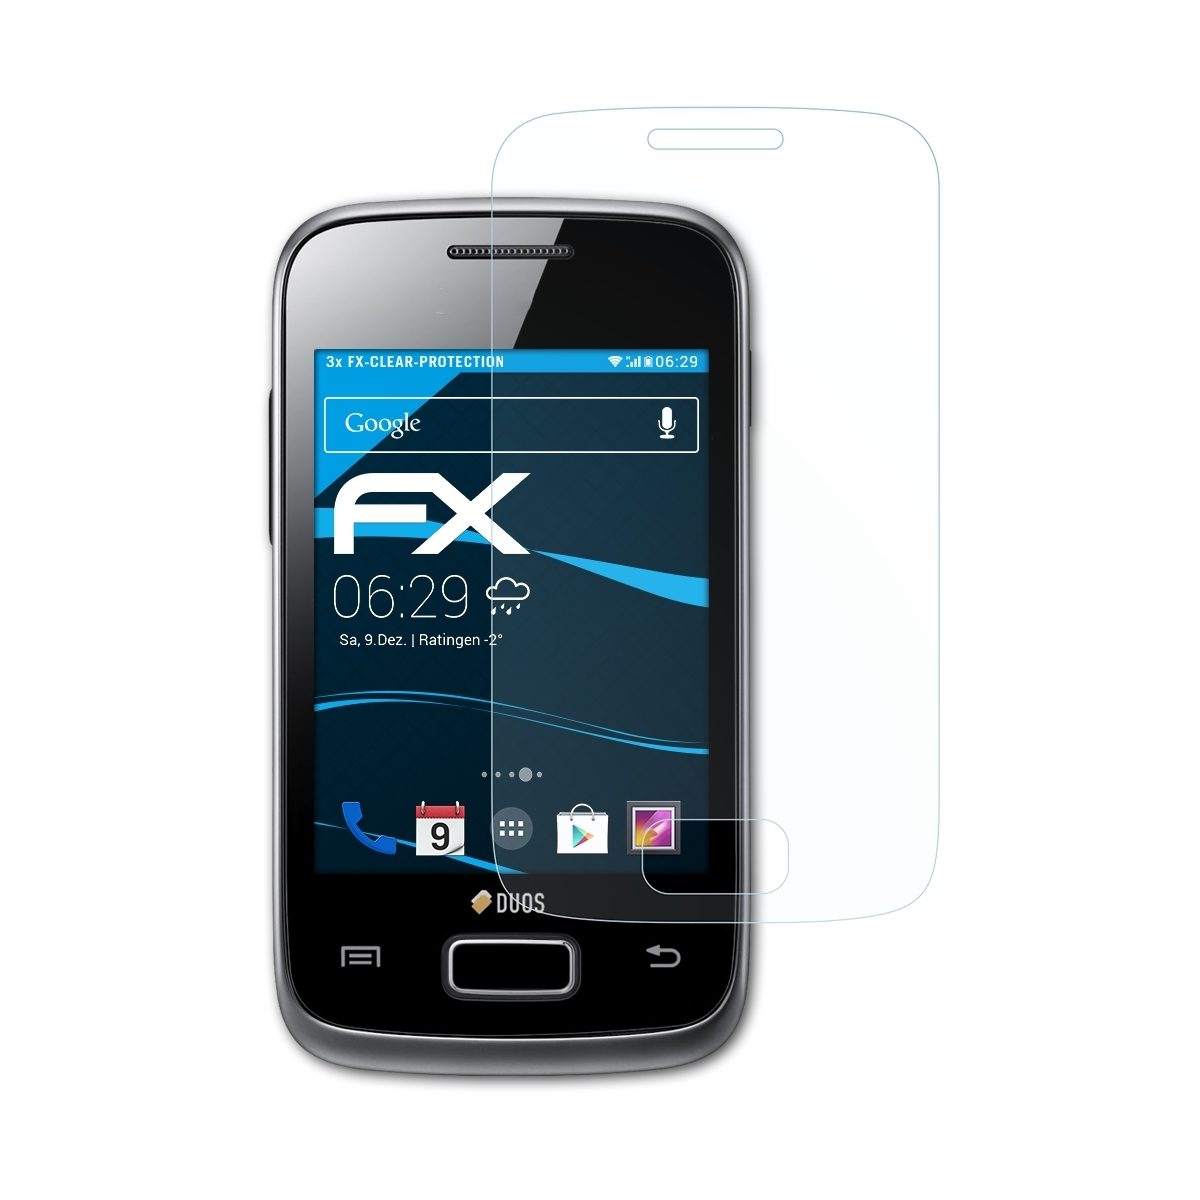 ATFOLIX 3x Y Galaxy Displayschutz(für Samsung (GT-S6102)) FX-Clear Duos